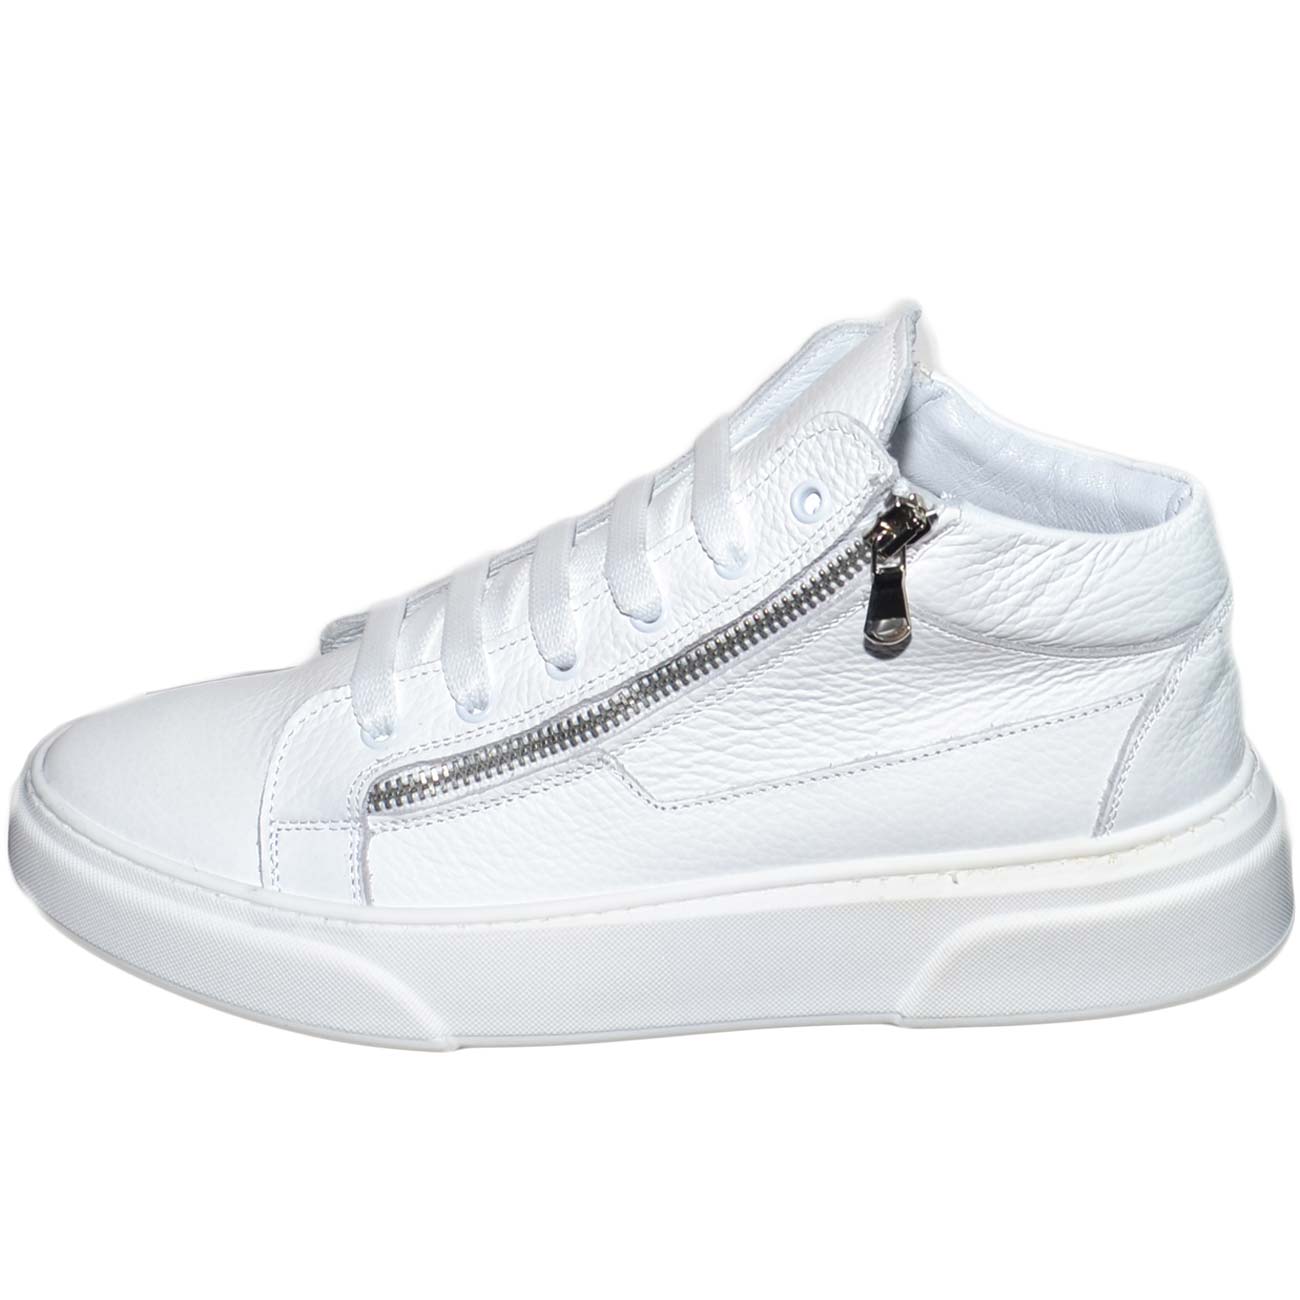 Sneakers bassa uomo in vera pelle bortolato bianco con doppia zip argento lacci fondo fur bianco modello za022 moda uomo